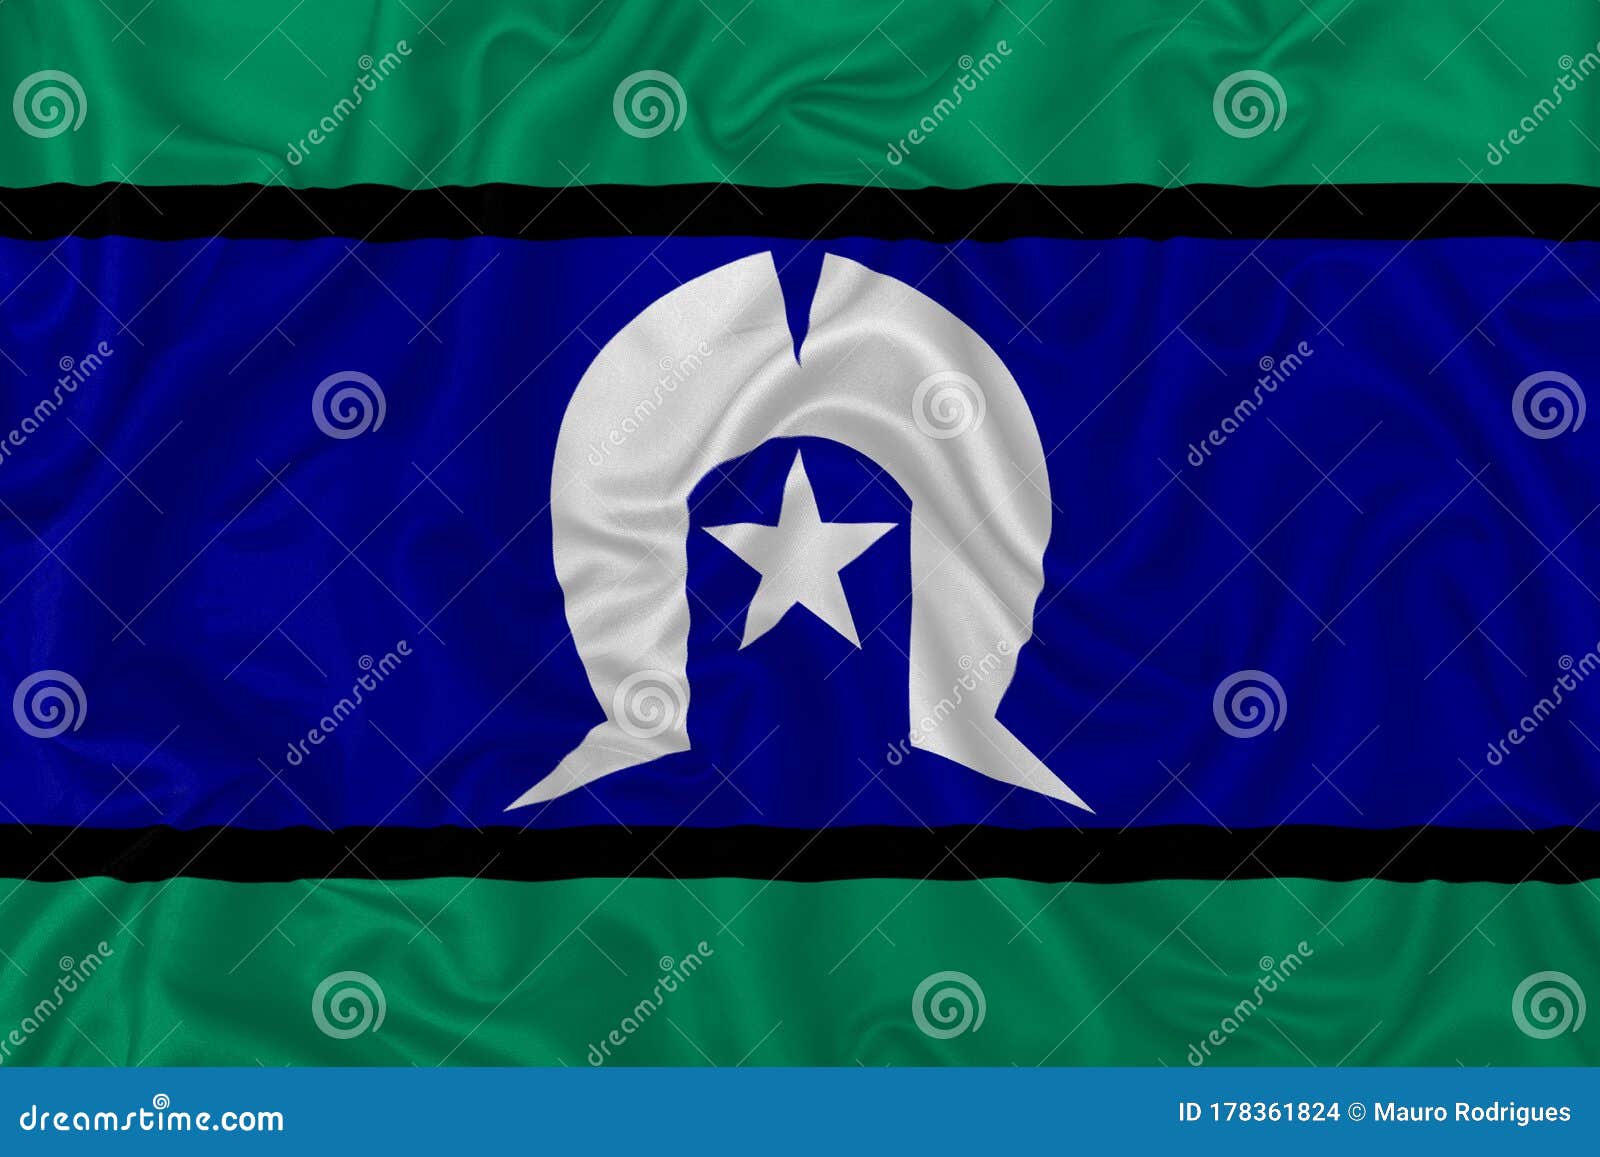 torres strait islanders flag